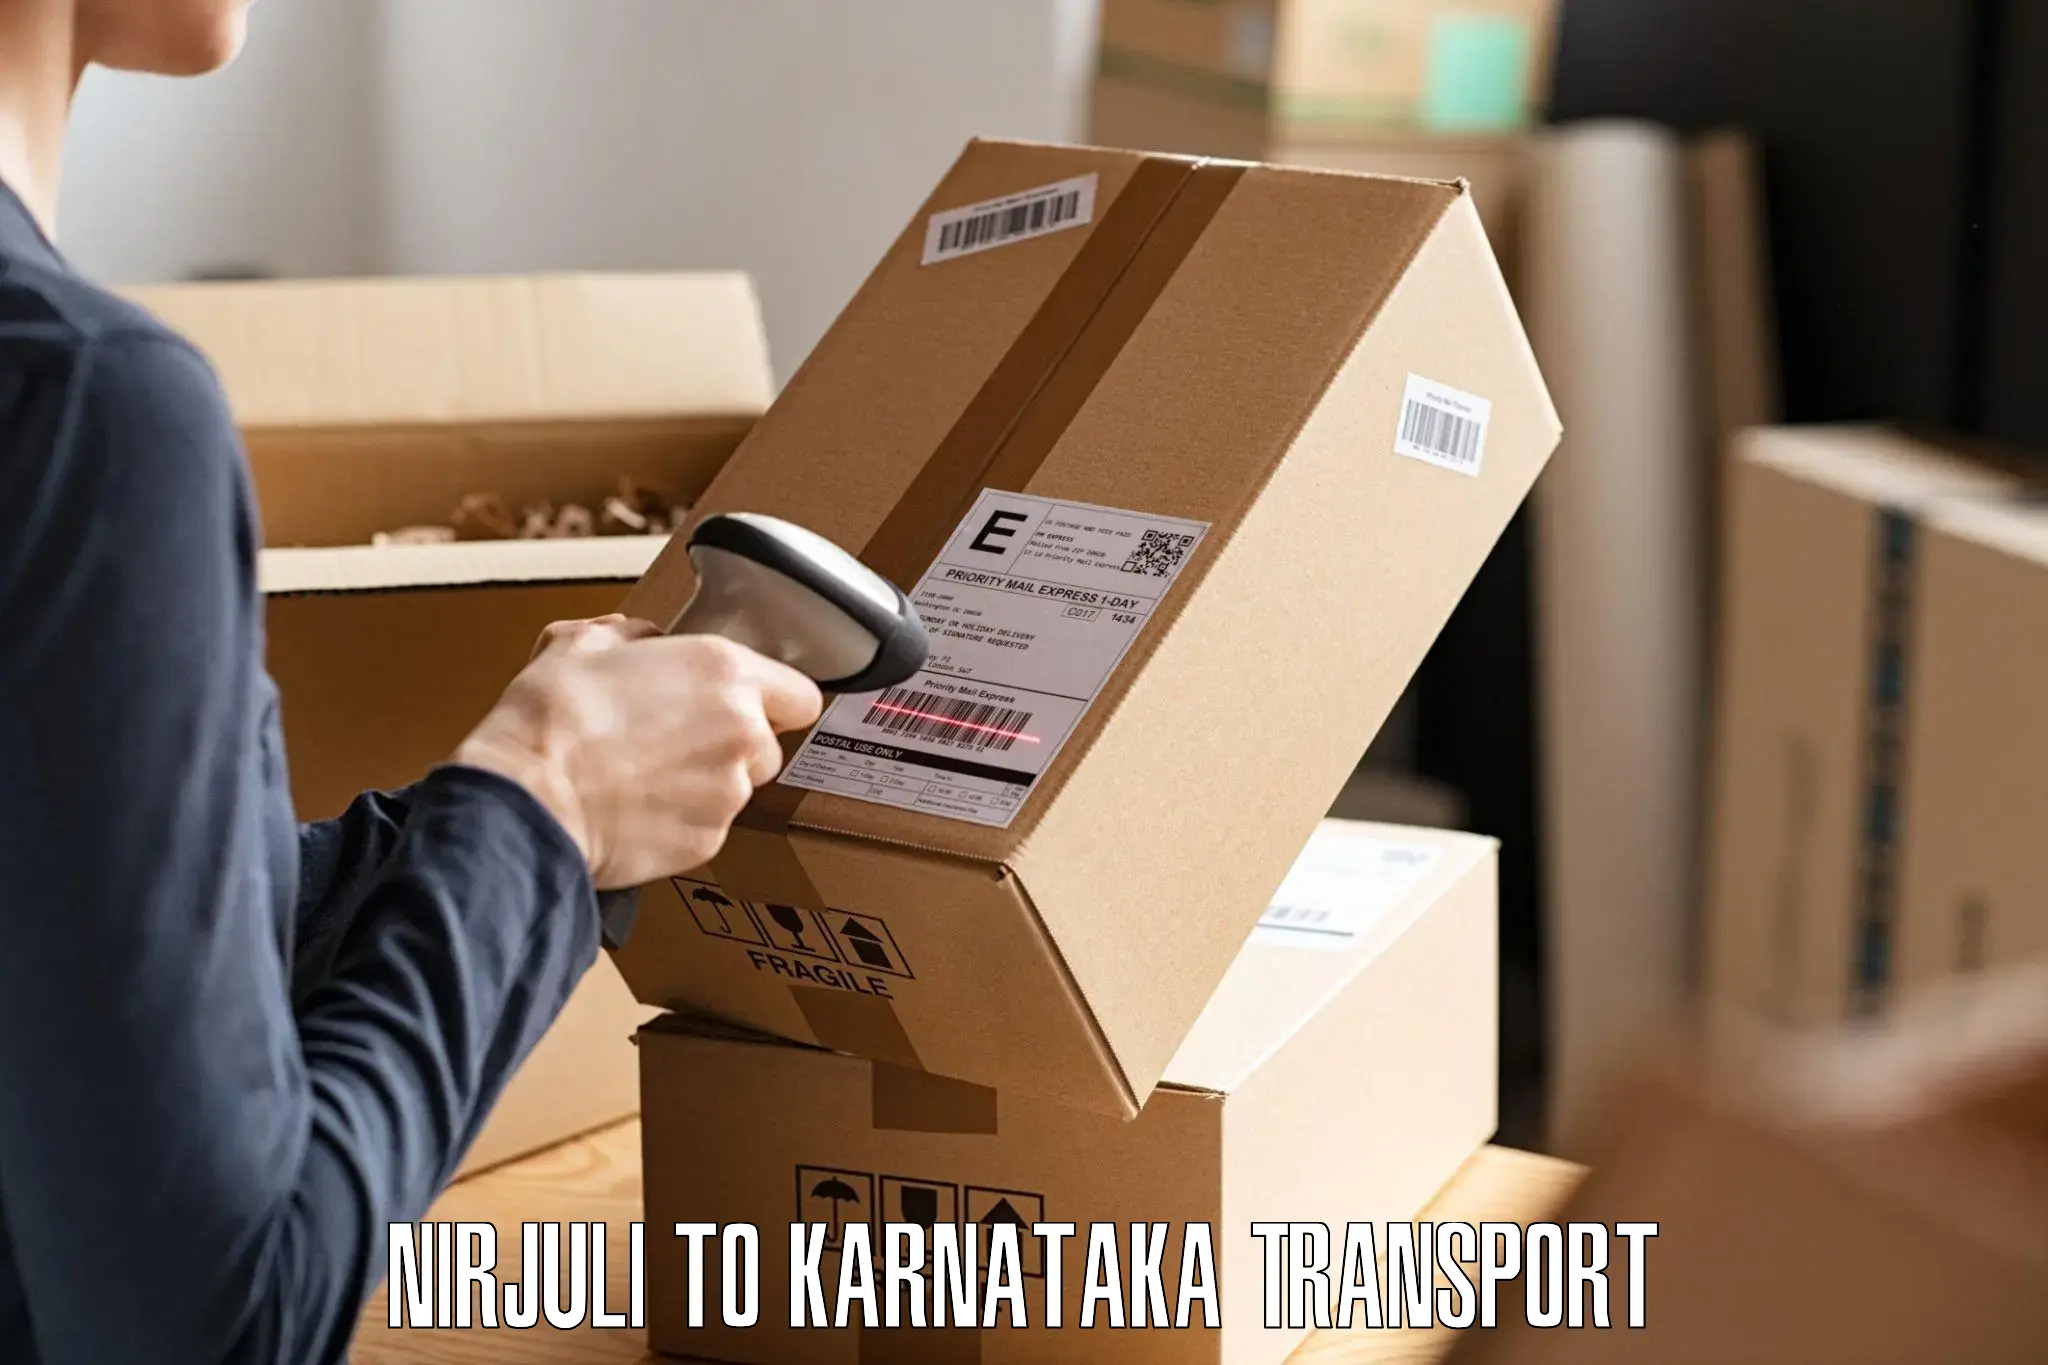 Online transport booking Nirjuli to Kanjarakatte